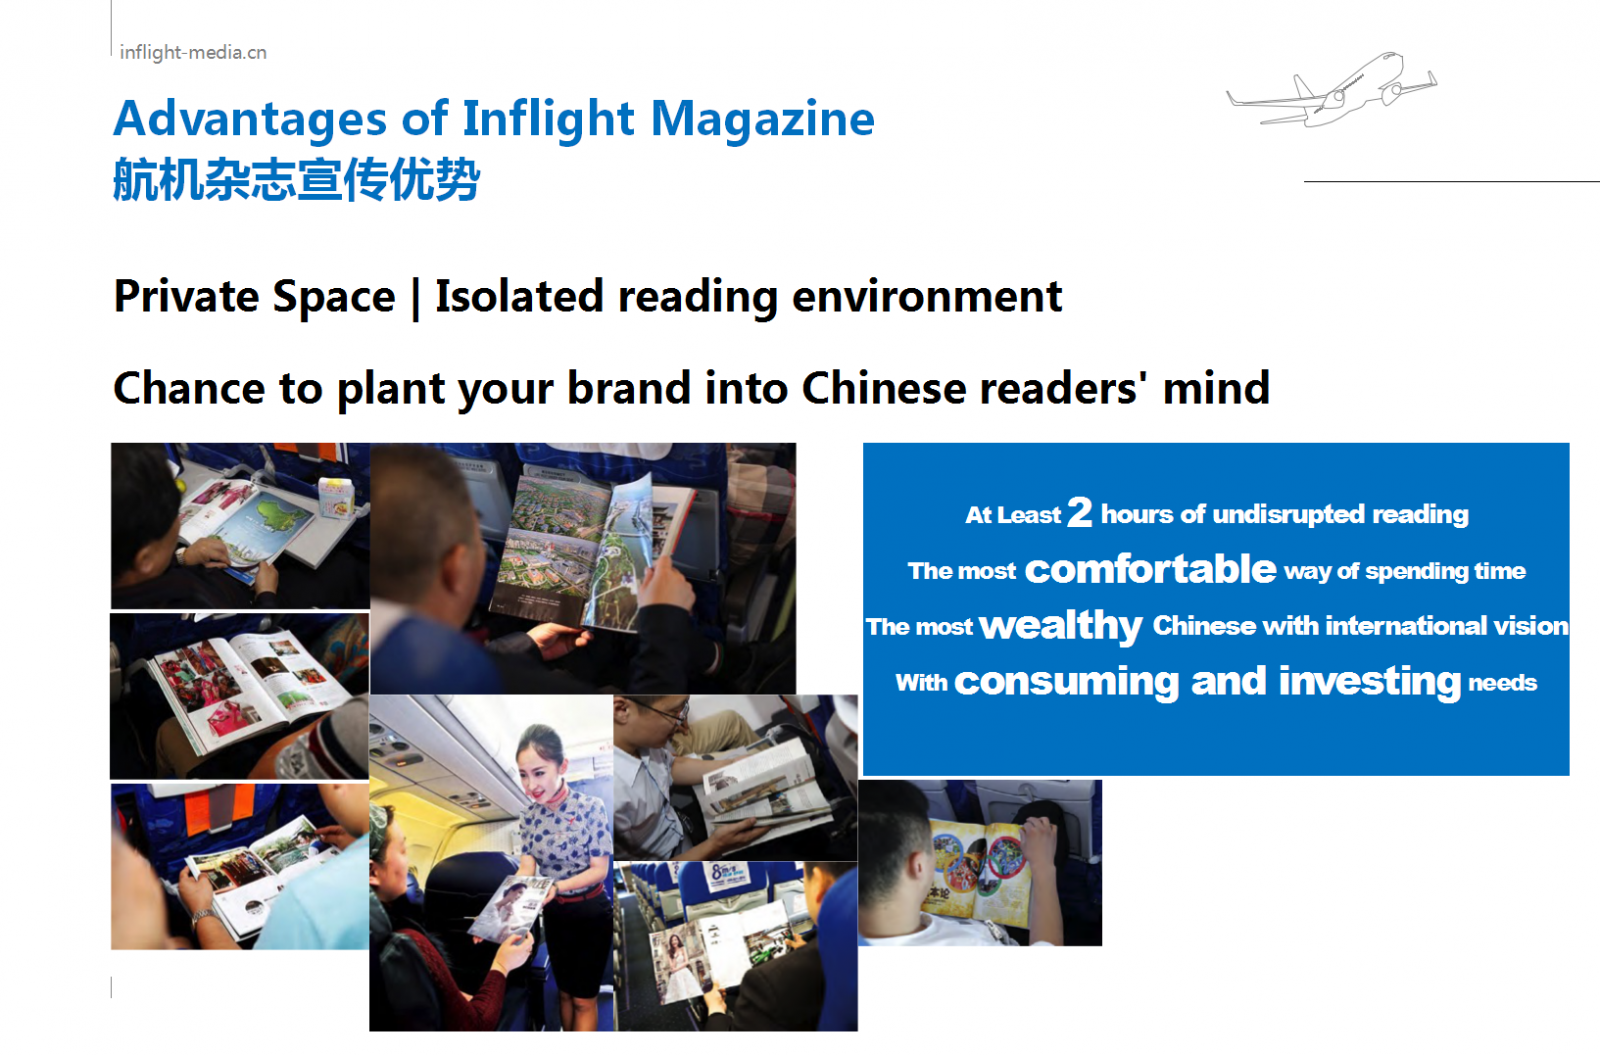 China inflight magazine